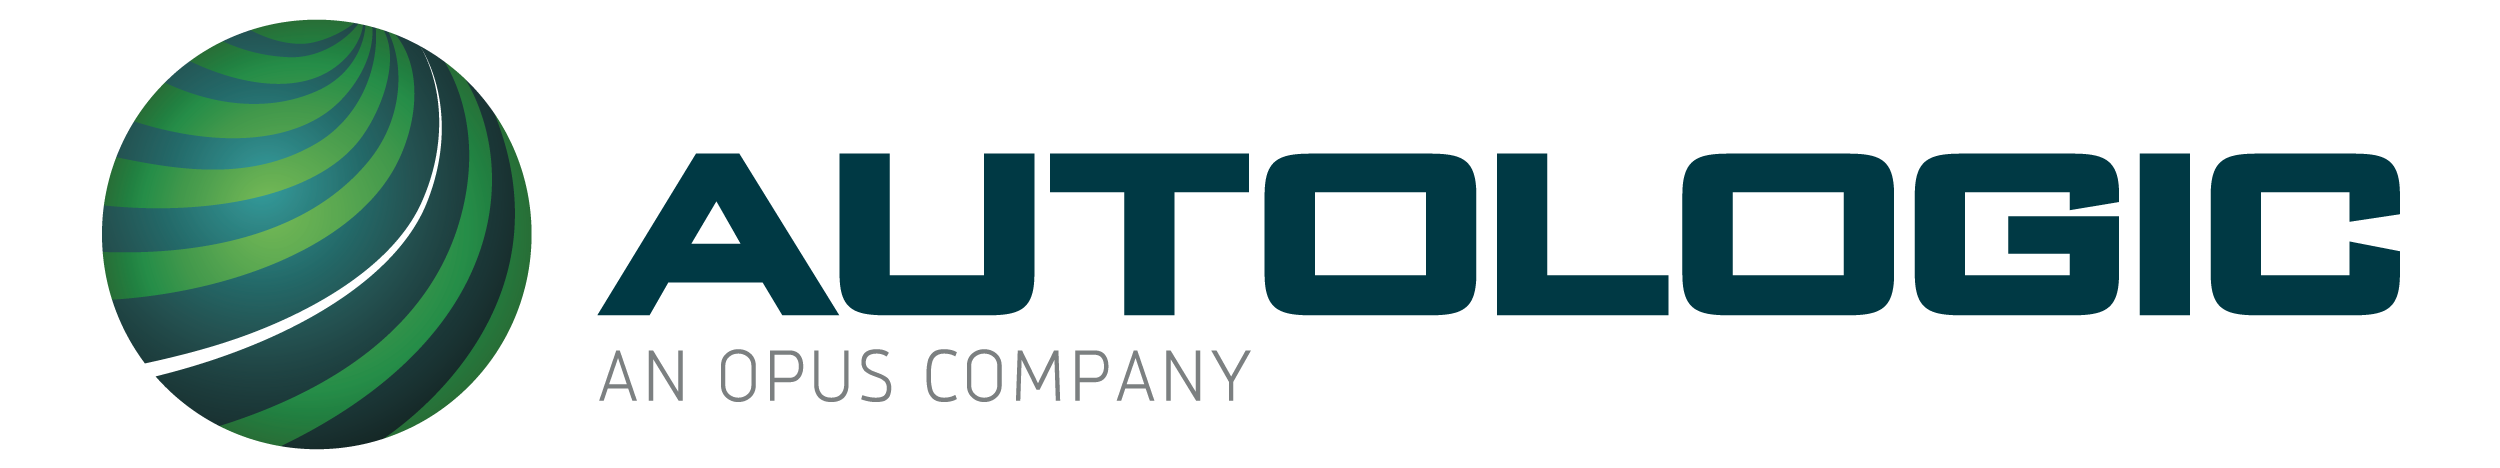 Autologic Logo